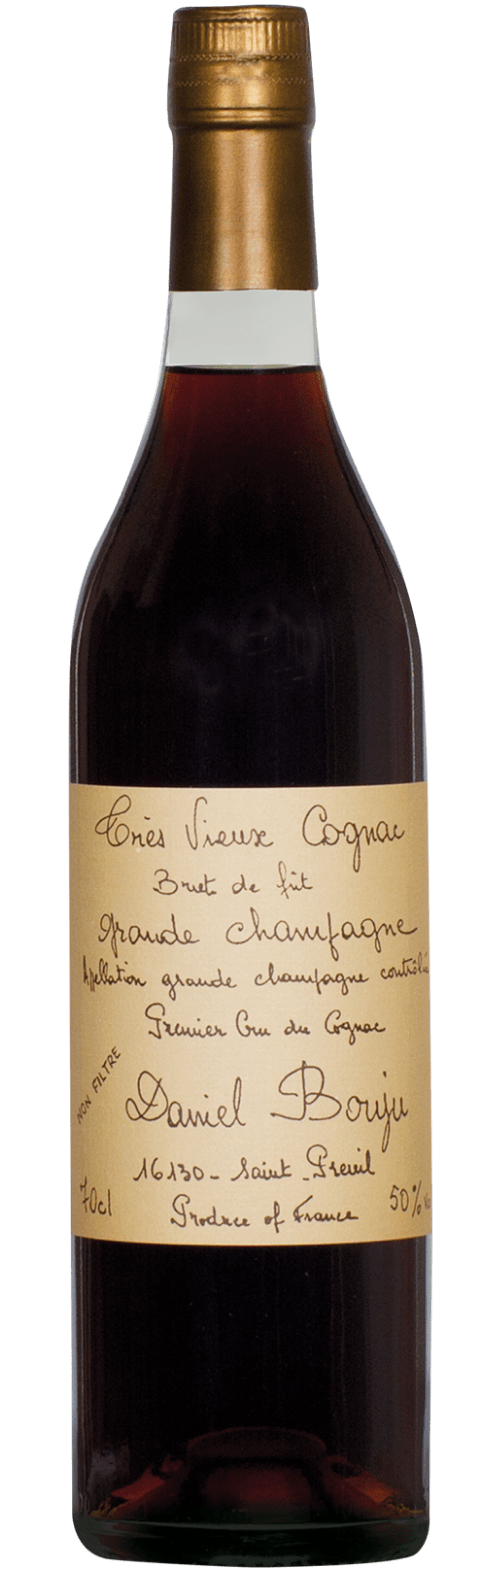 Brut de Fut Cognac Grande Champagne A.C.C. Daniel Bouju